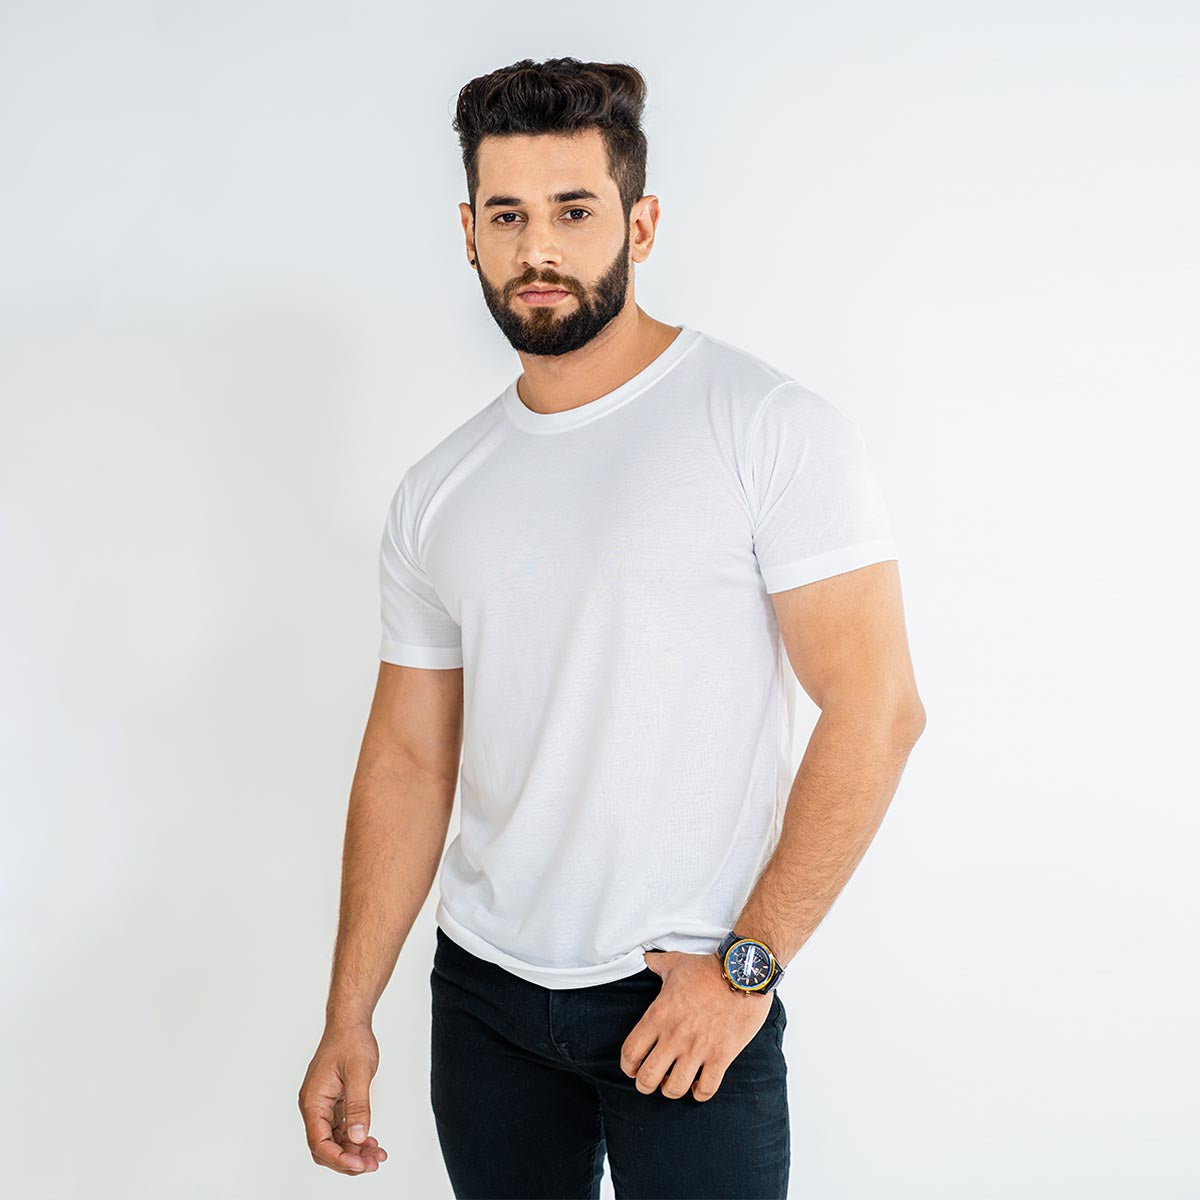 Basic Men's Plain T-Shirt, White T-Shirt, Half Sleeves T-Shirt